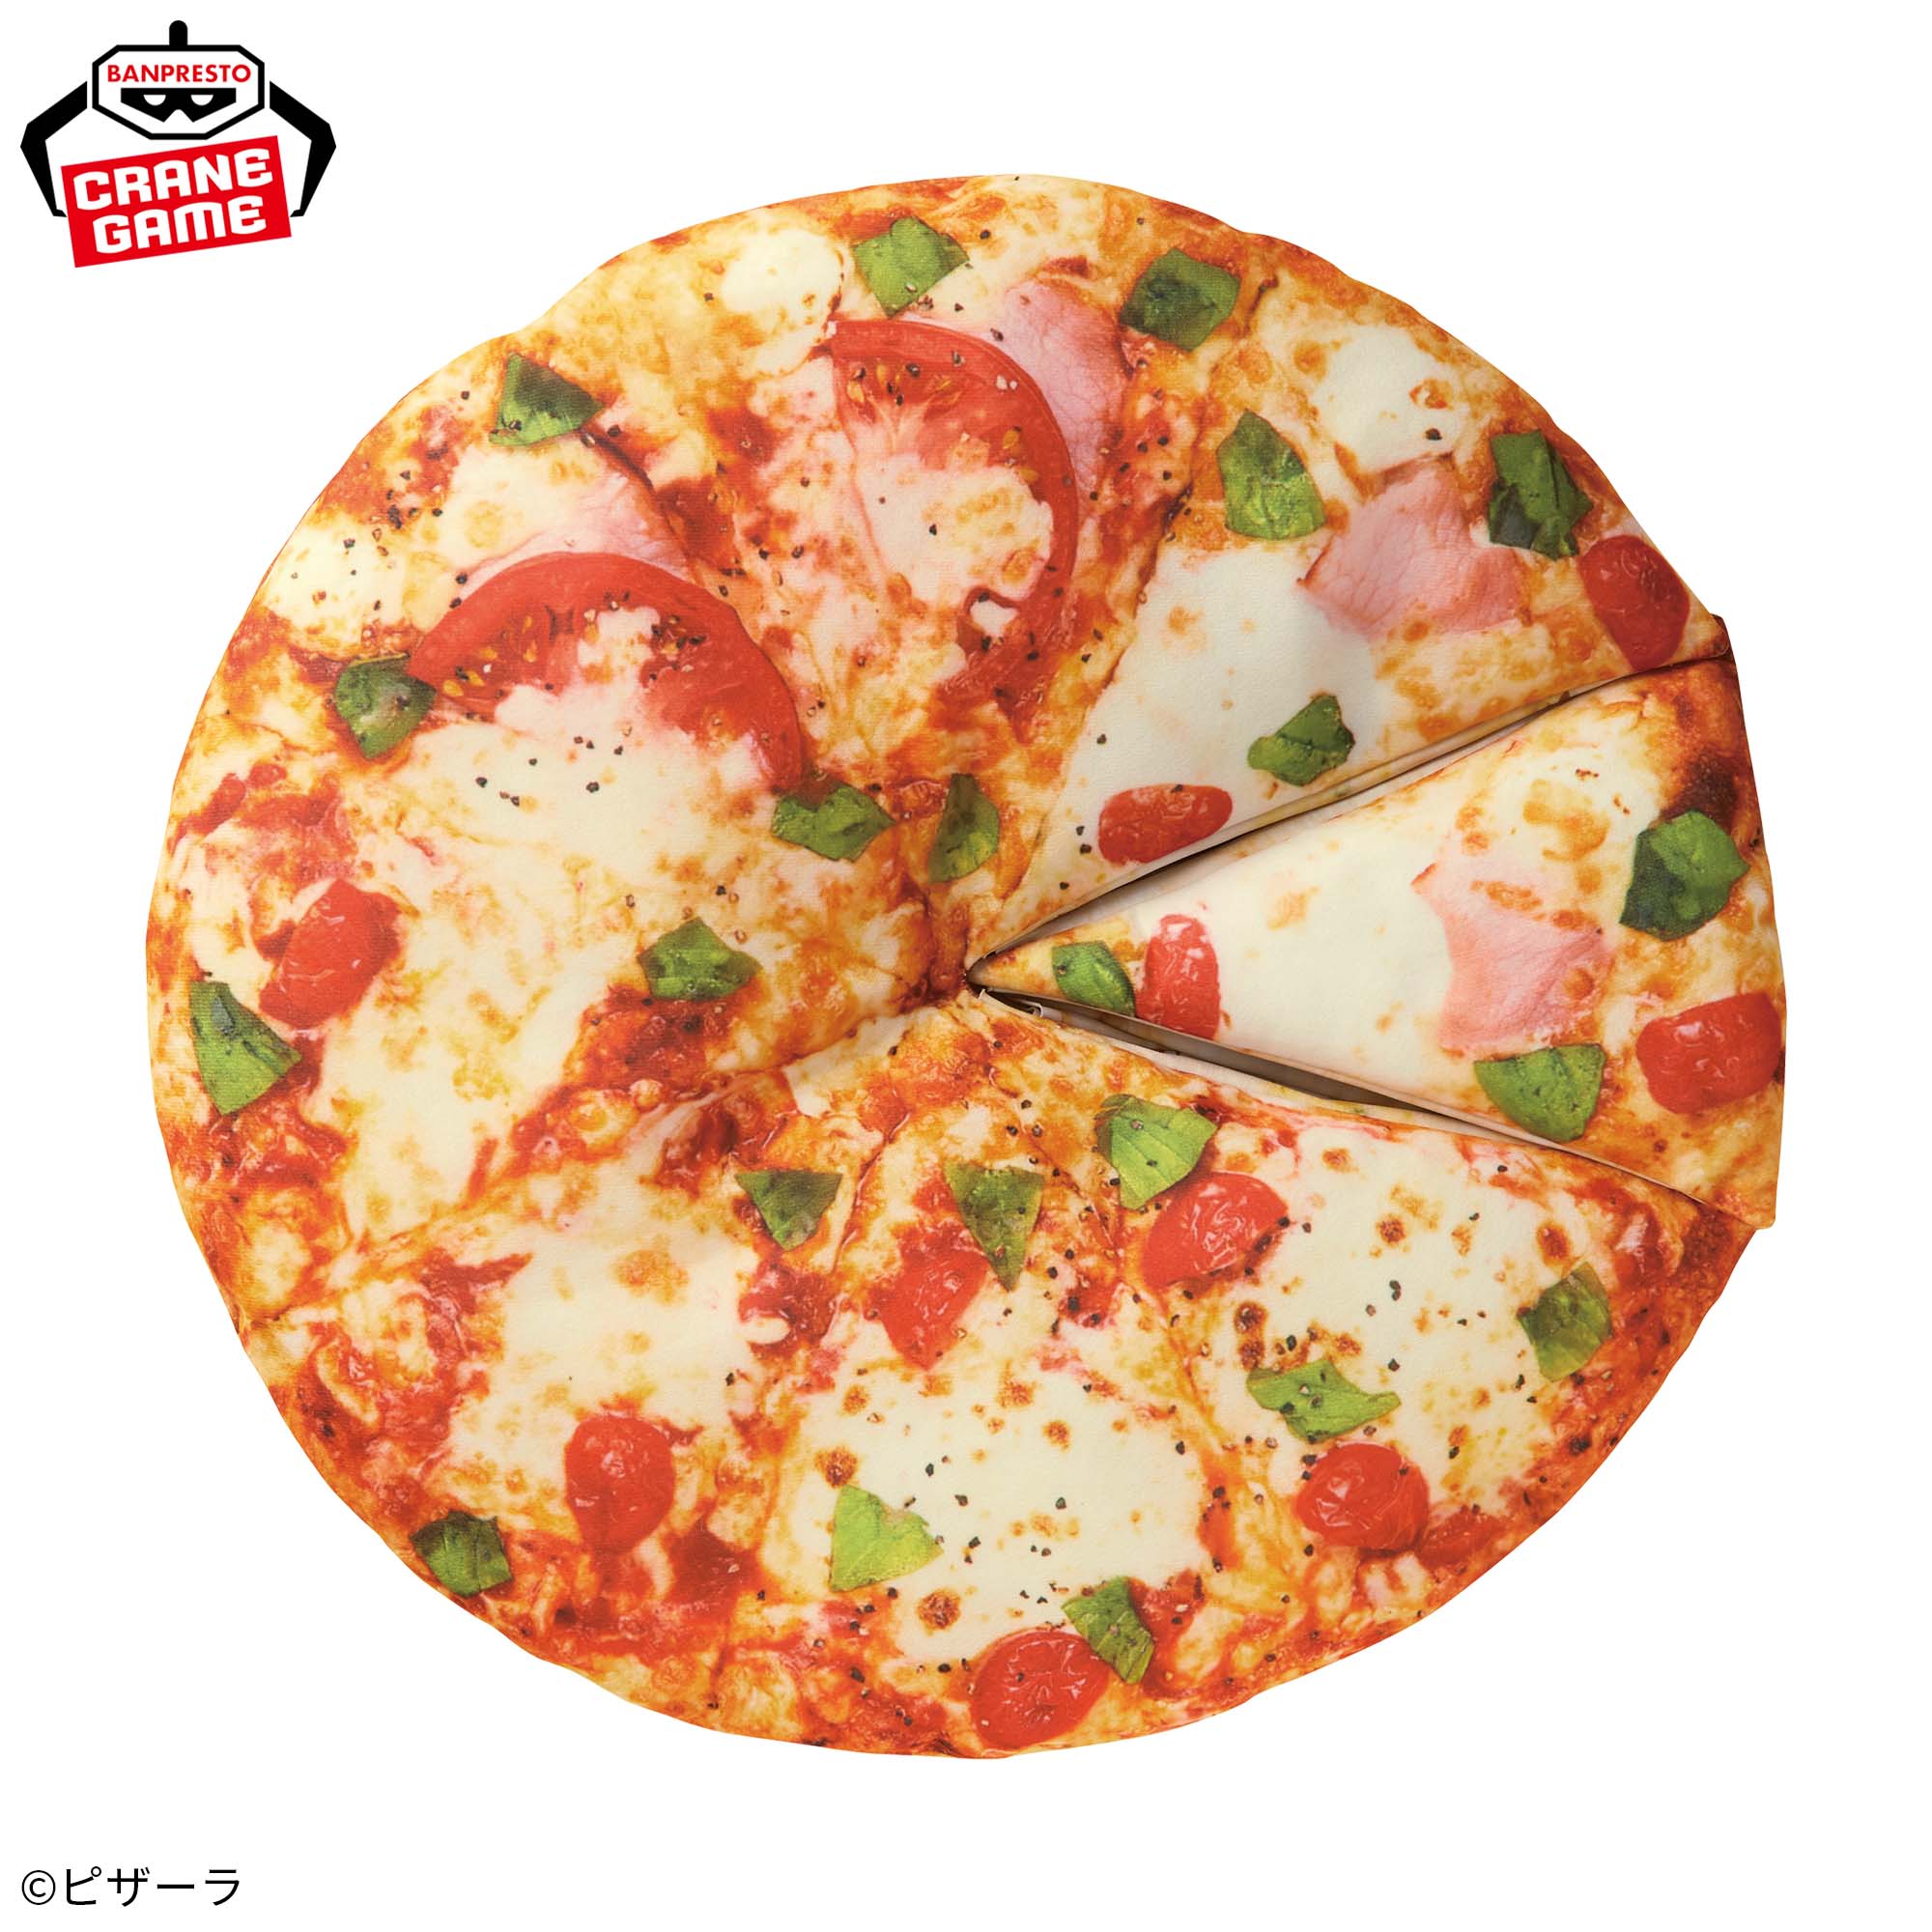 PIZZA-LA めちゃもふぐっと のび～るピザぬいぐるみ